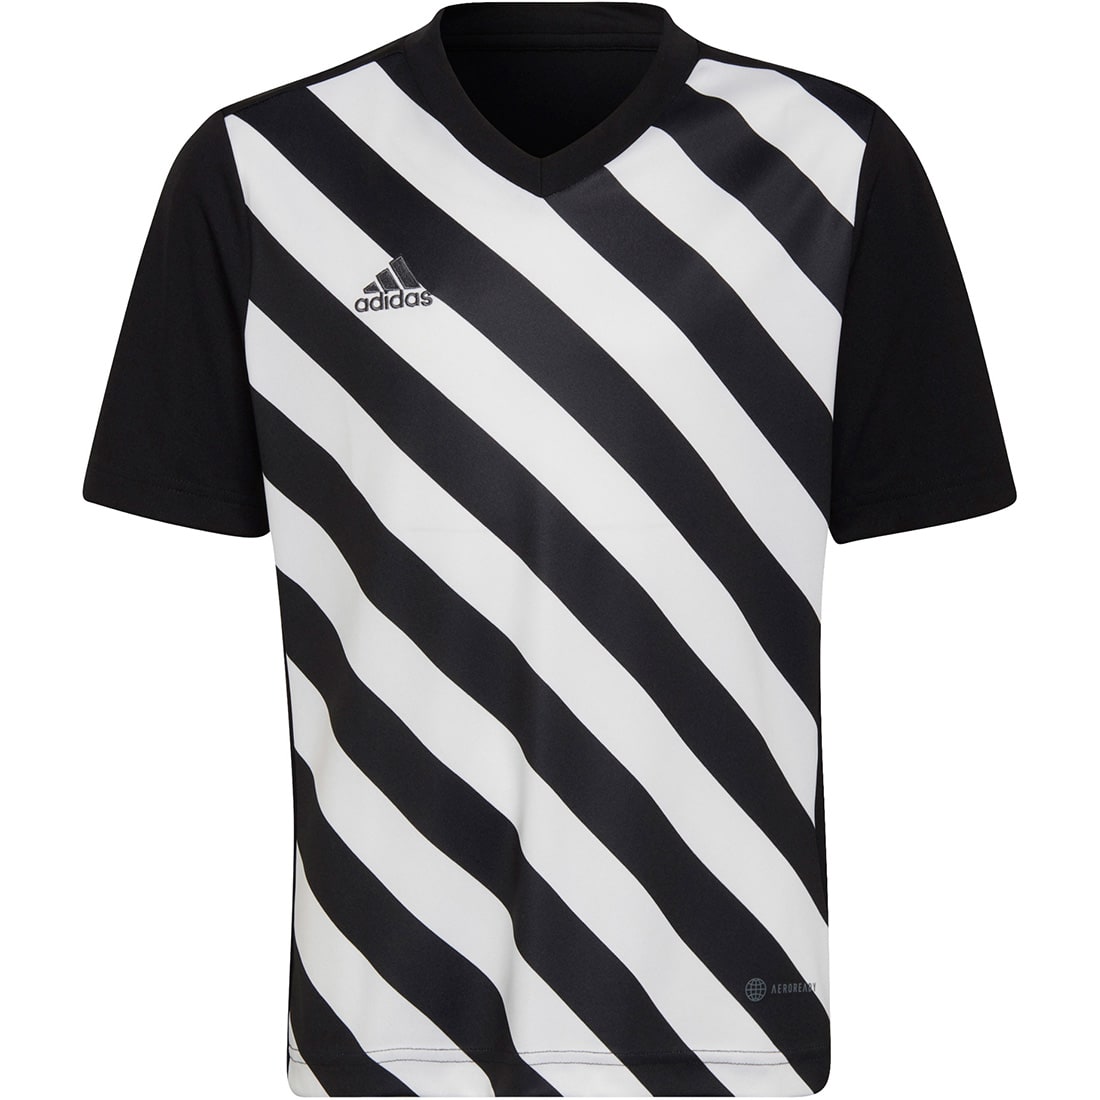 Adidas Kinder GFX Trikot Entrada kaufen online 22 schwarz-weiß